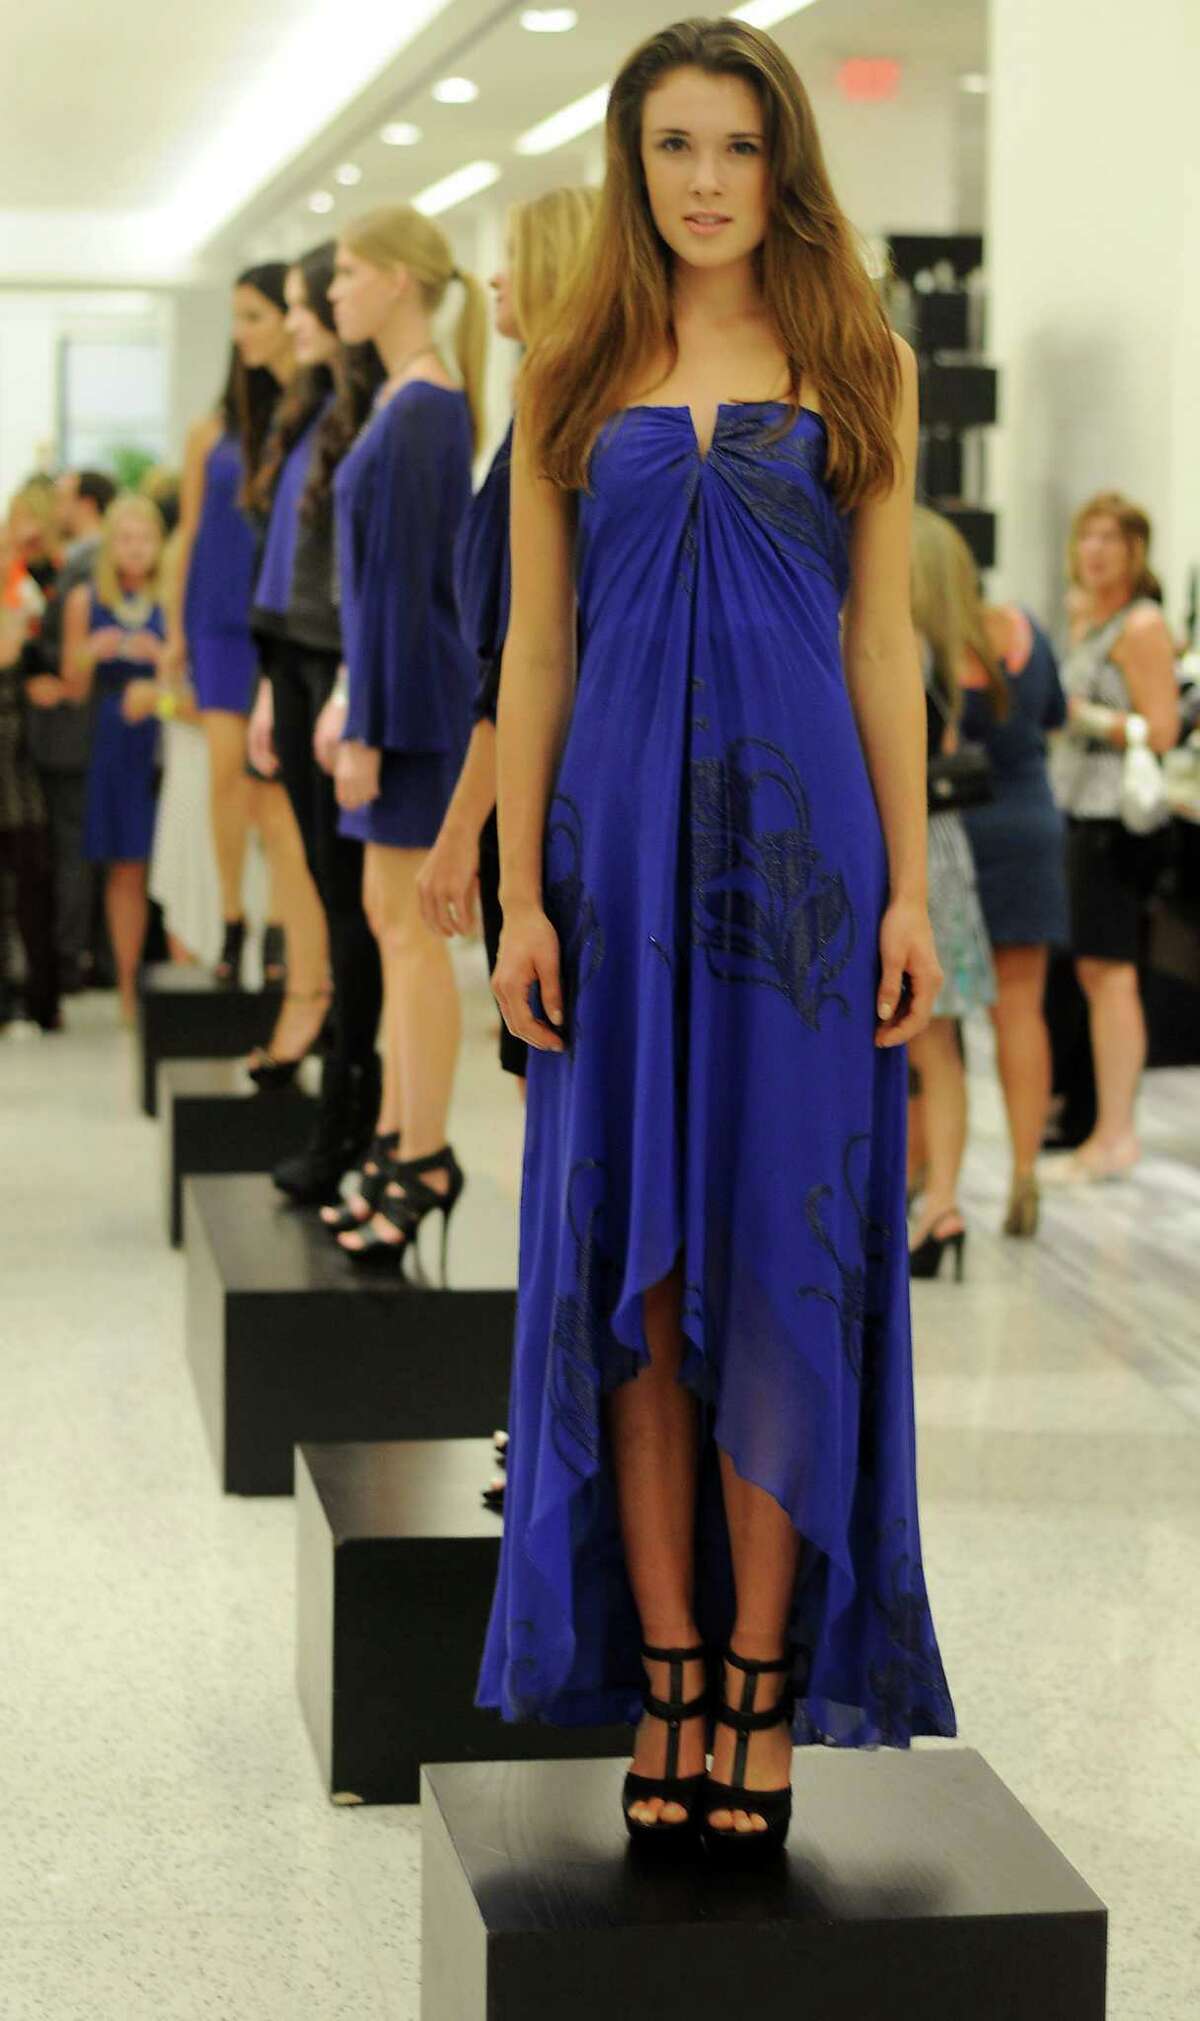 A model wears a Nicole Miller gown.